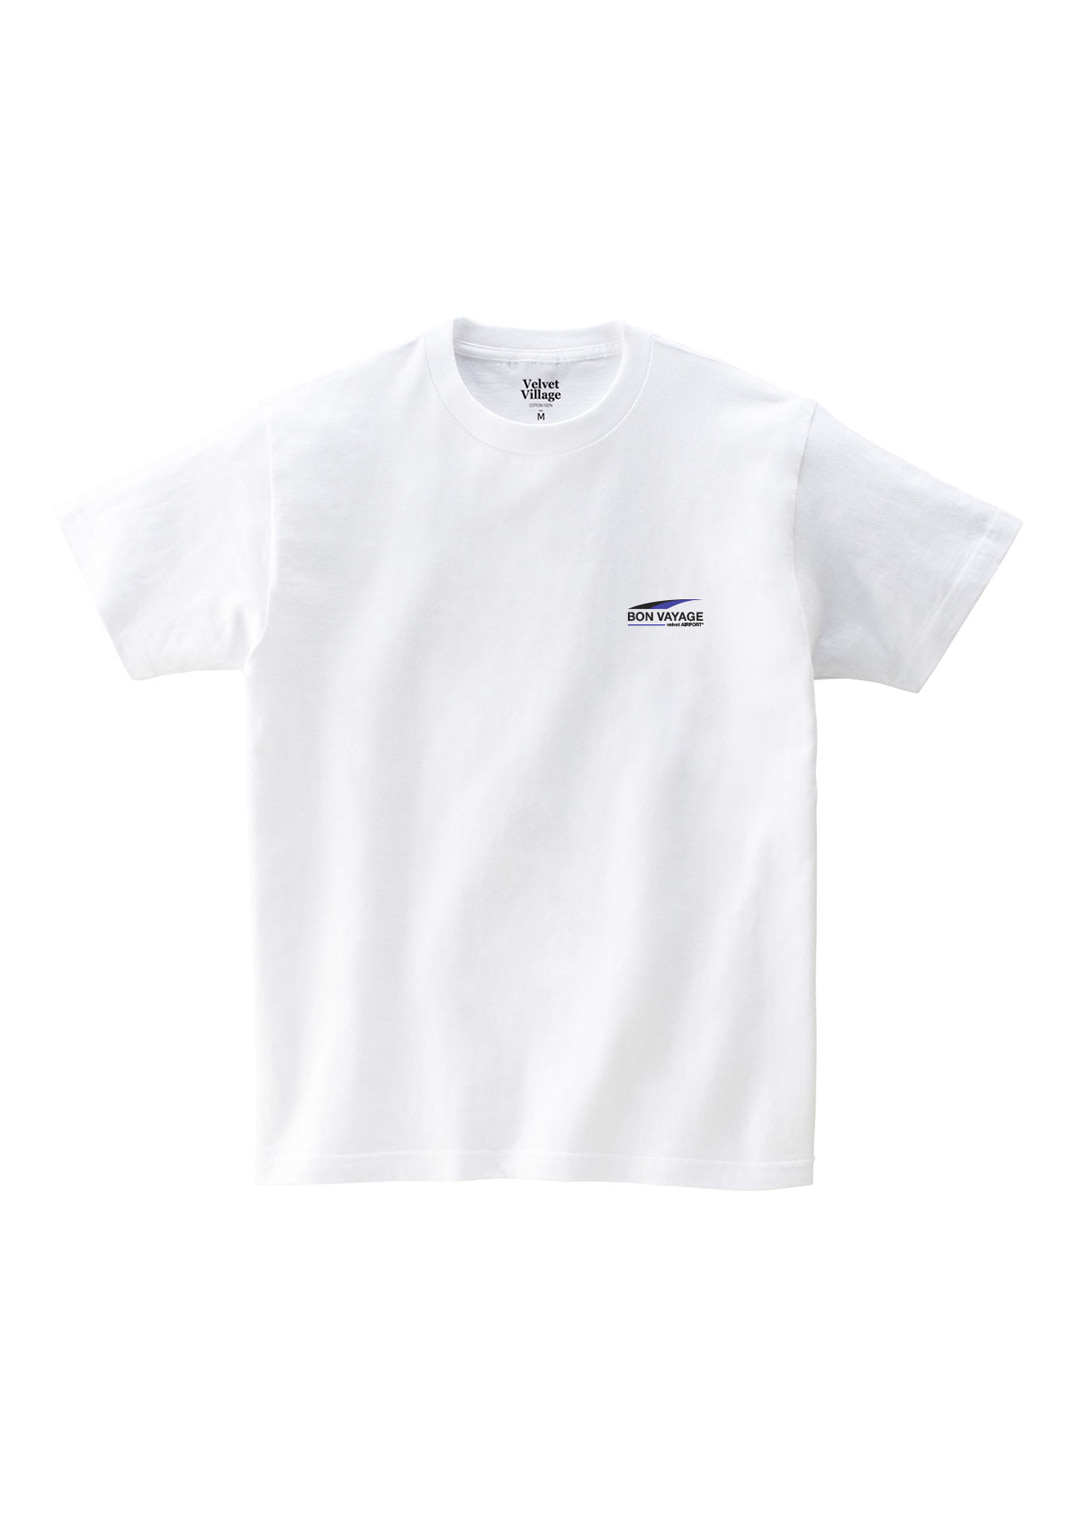 Bon voyage T-shirt (White)